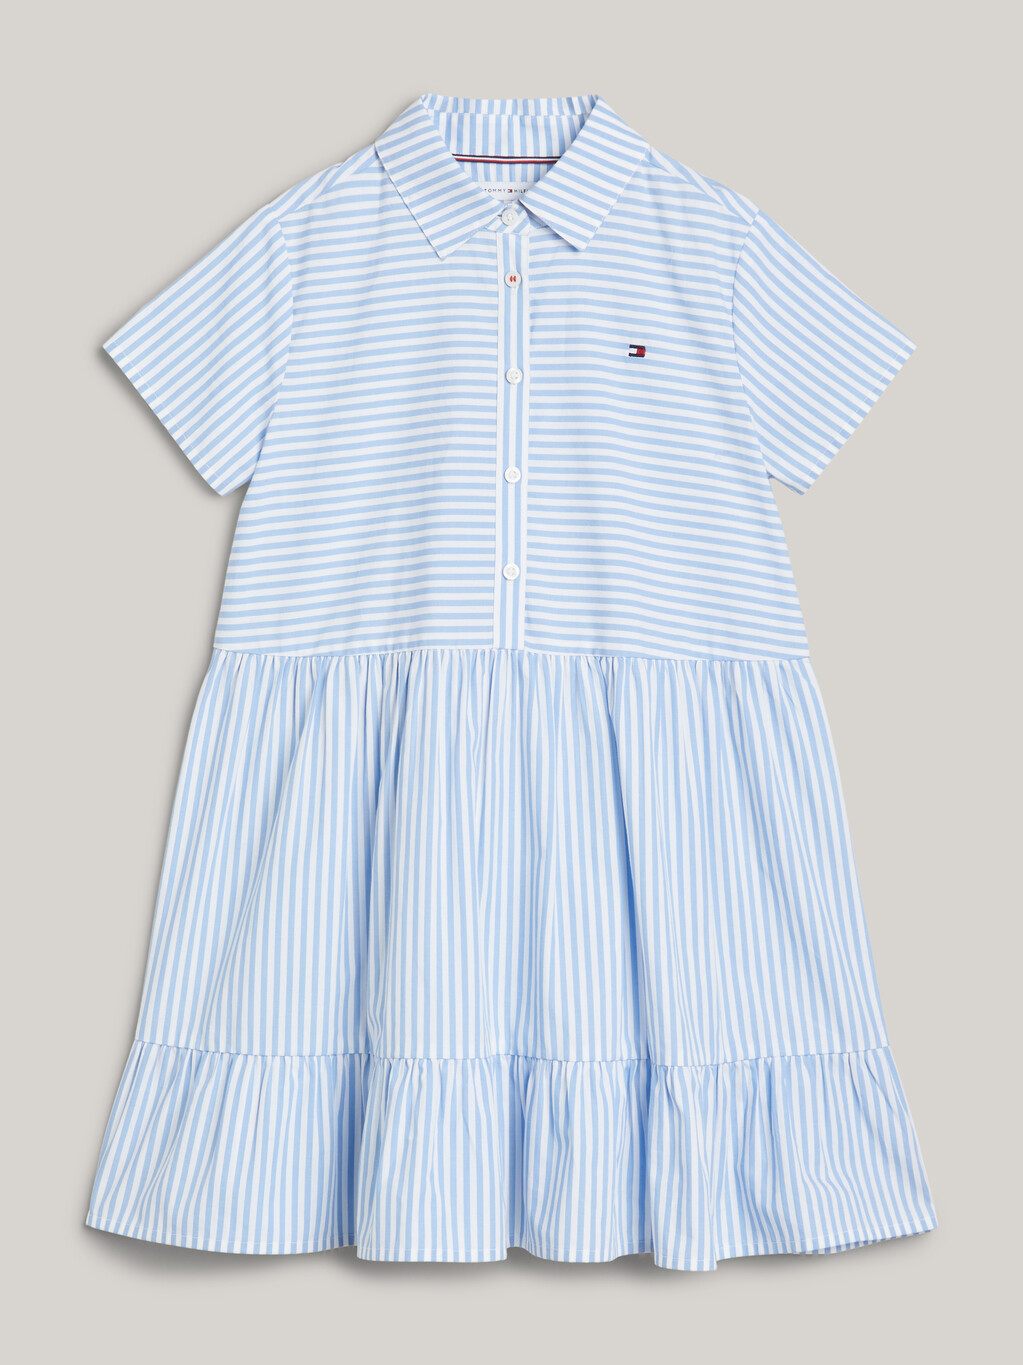 Ithaca 條紋合身喇叭連身裙, Blue Spell Stripe / White, hi-res